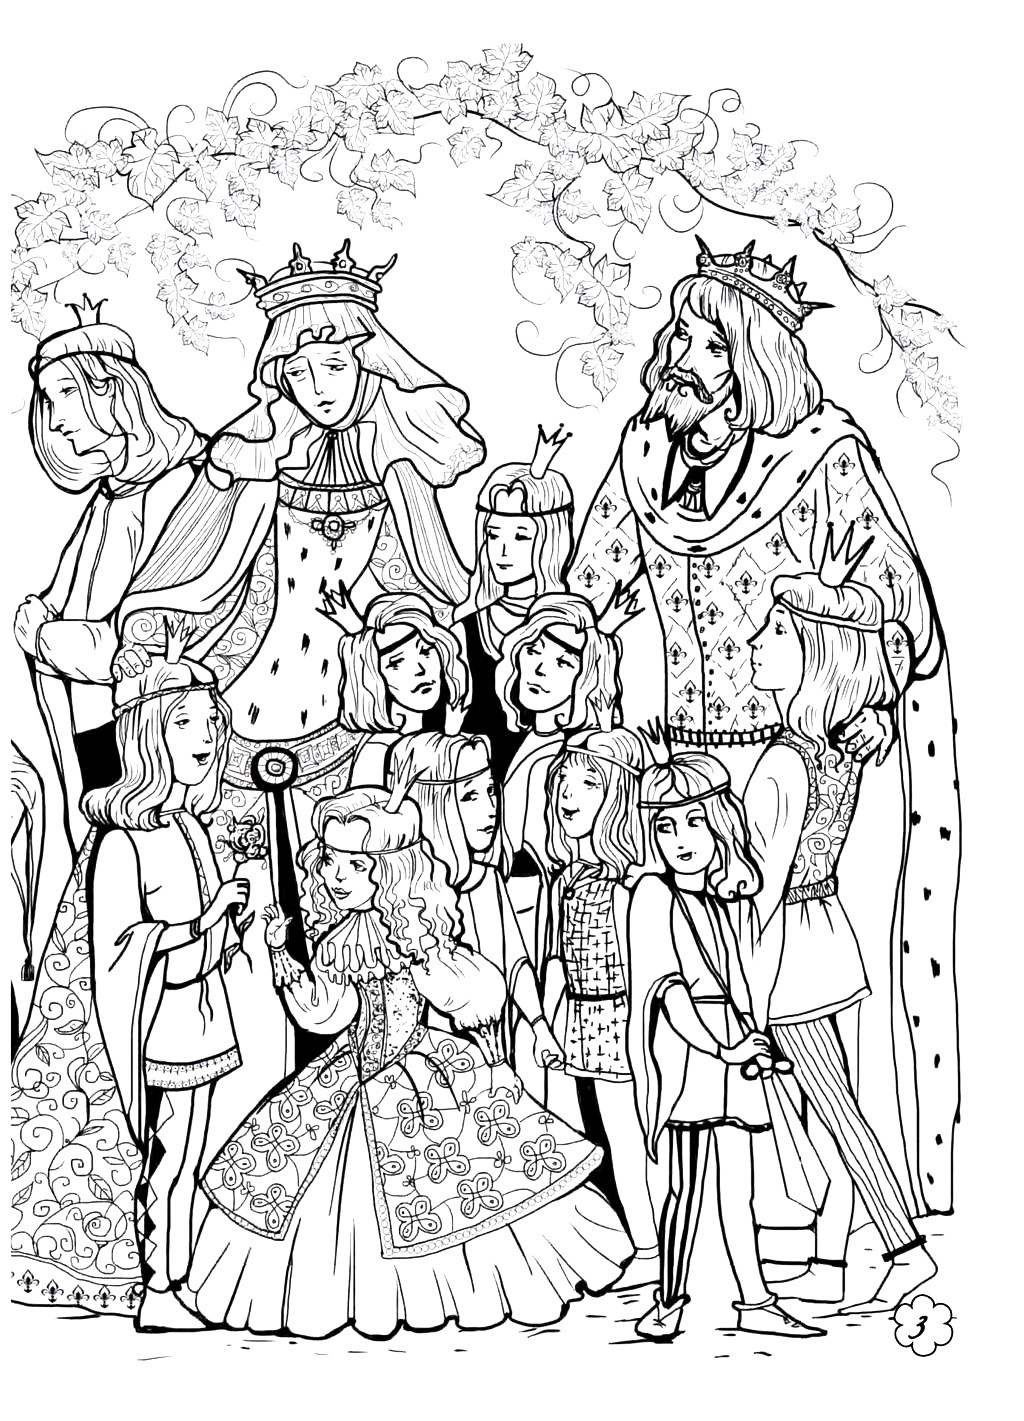 Королевская семья из мультика Дикие Лебеди